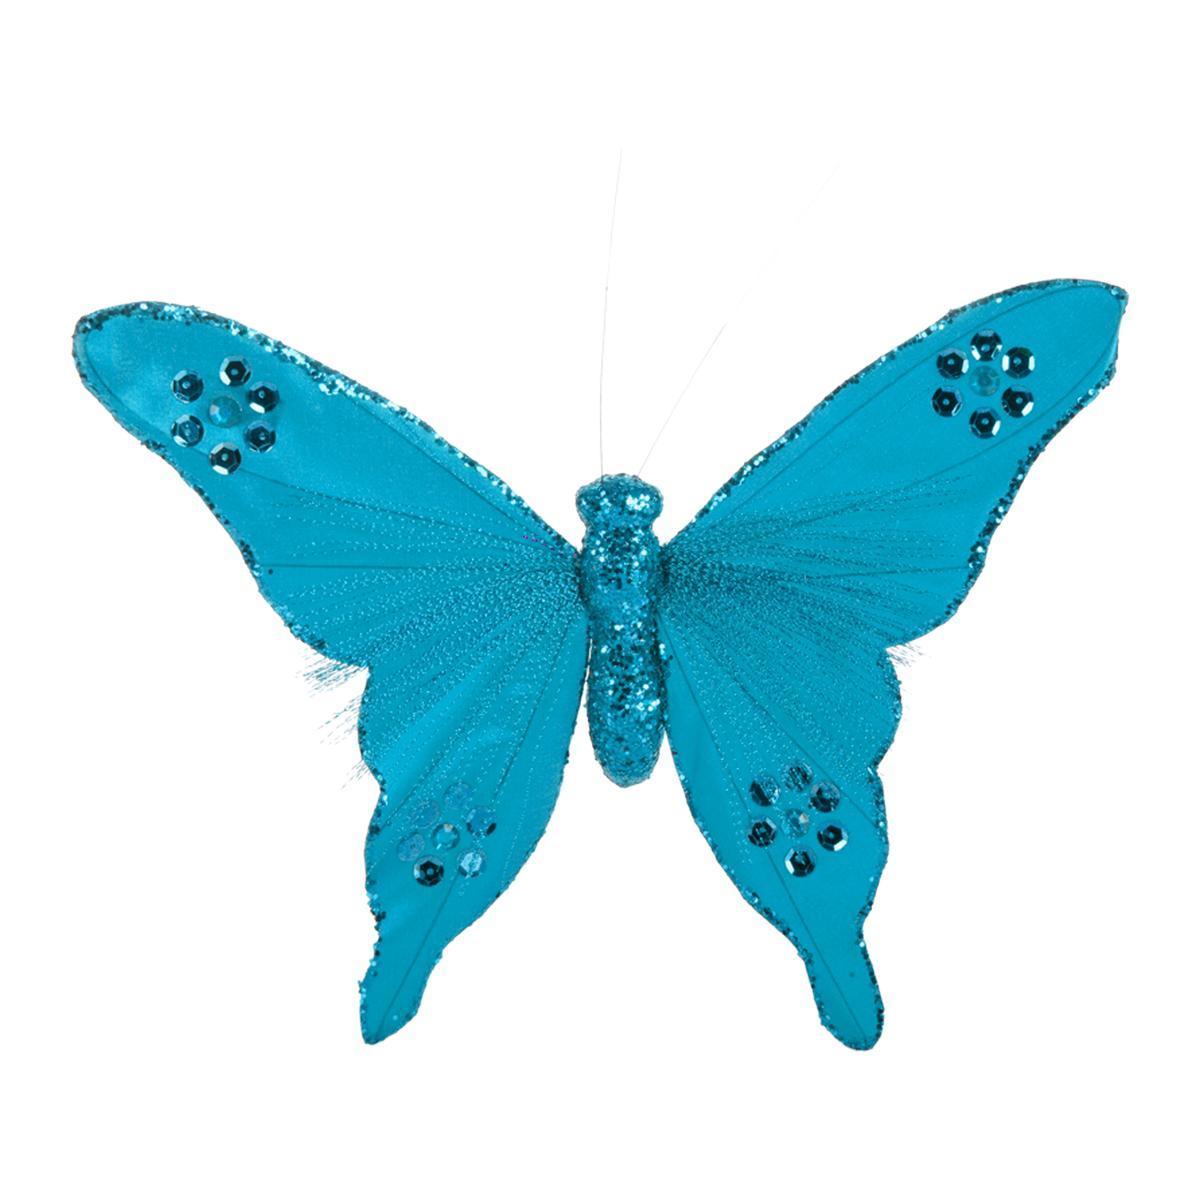 Pince papillon - Polystyrène et tissu - 26 cm - Bleu turquoise